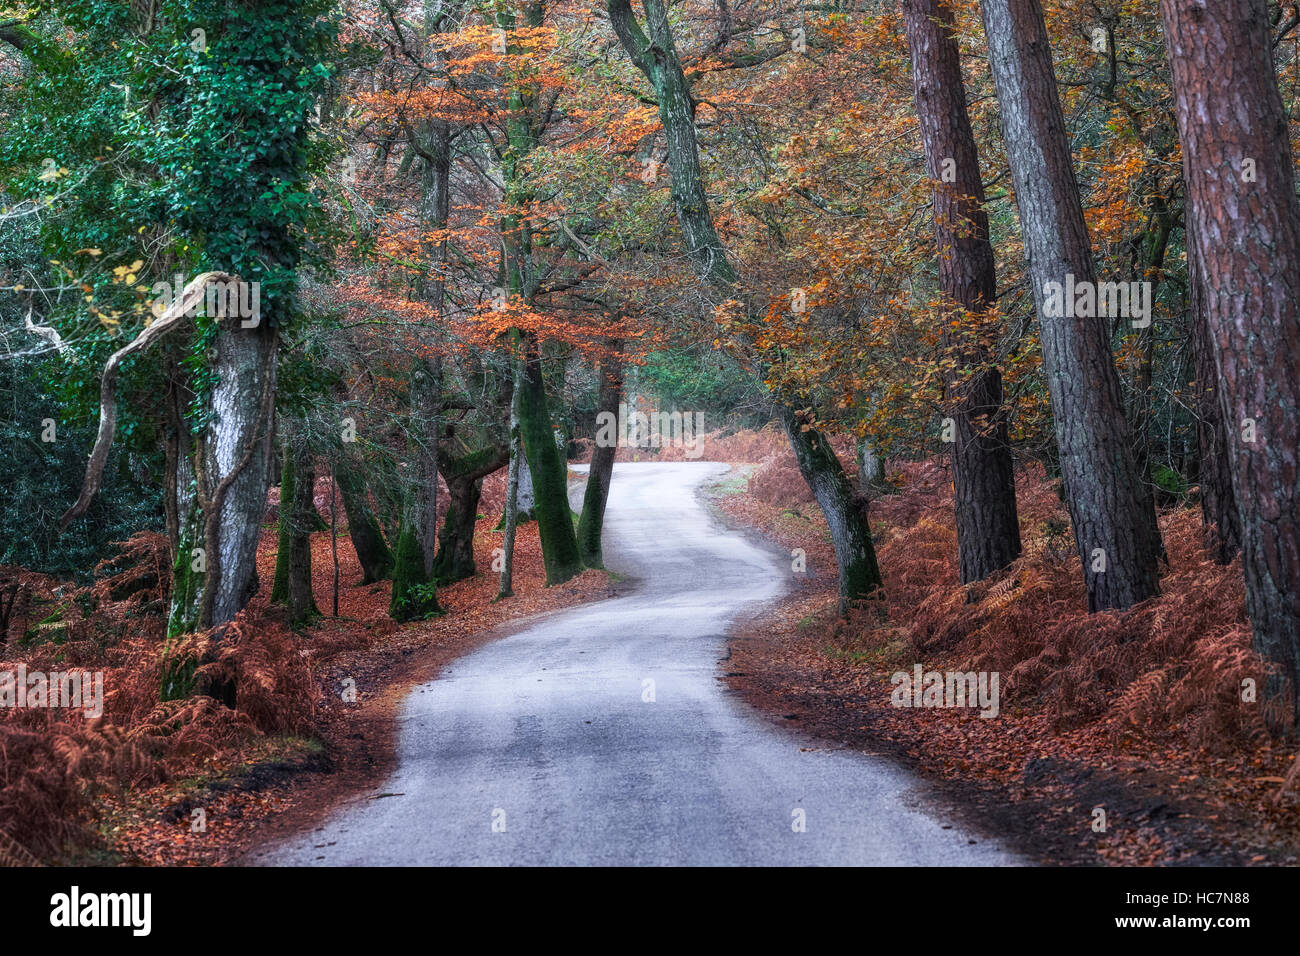 New Forest, Lyndhurst, Bolderwood, Hampshire, England, UK Stock Photo